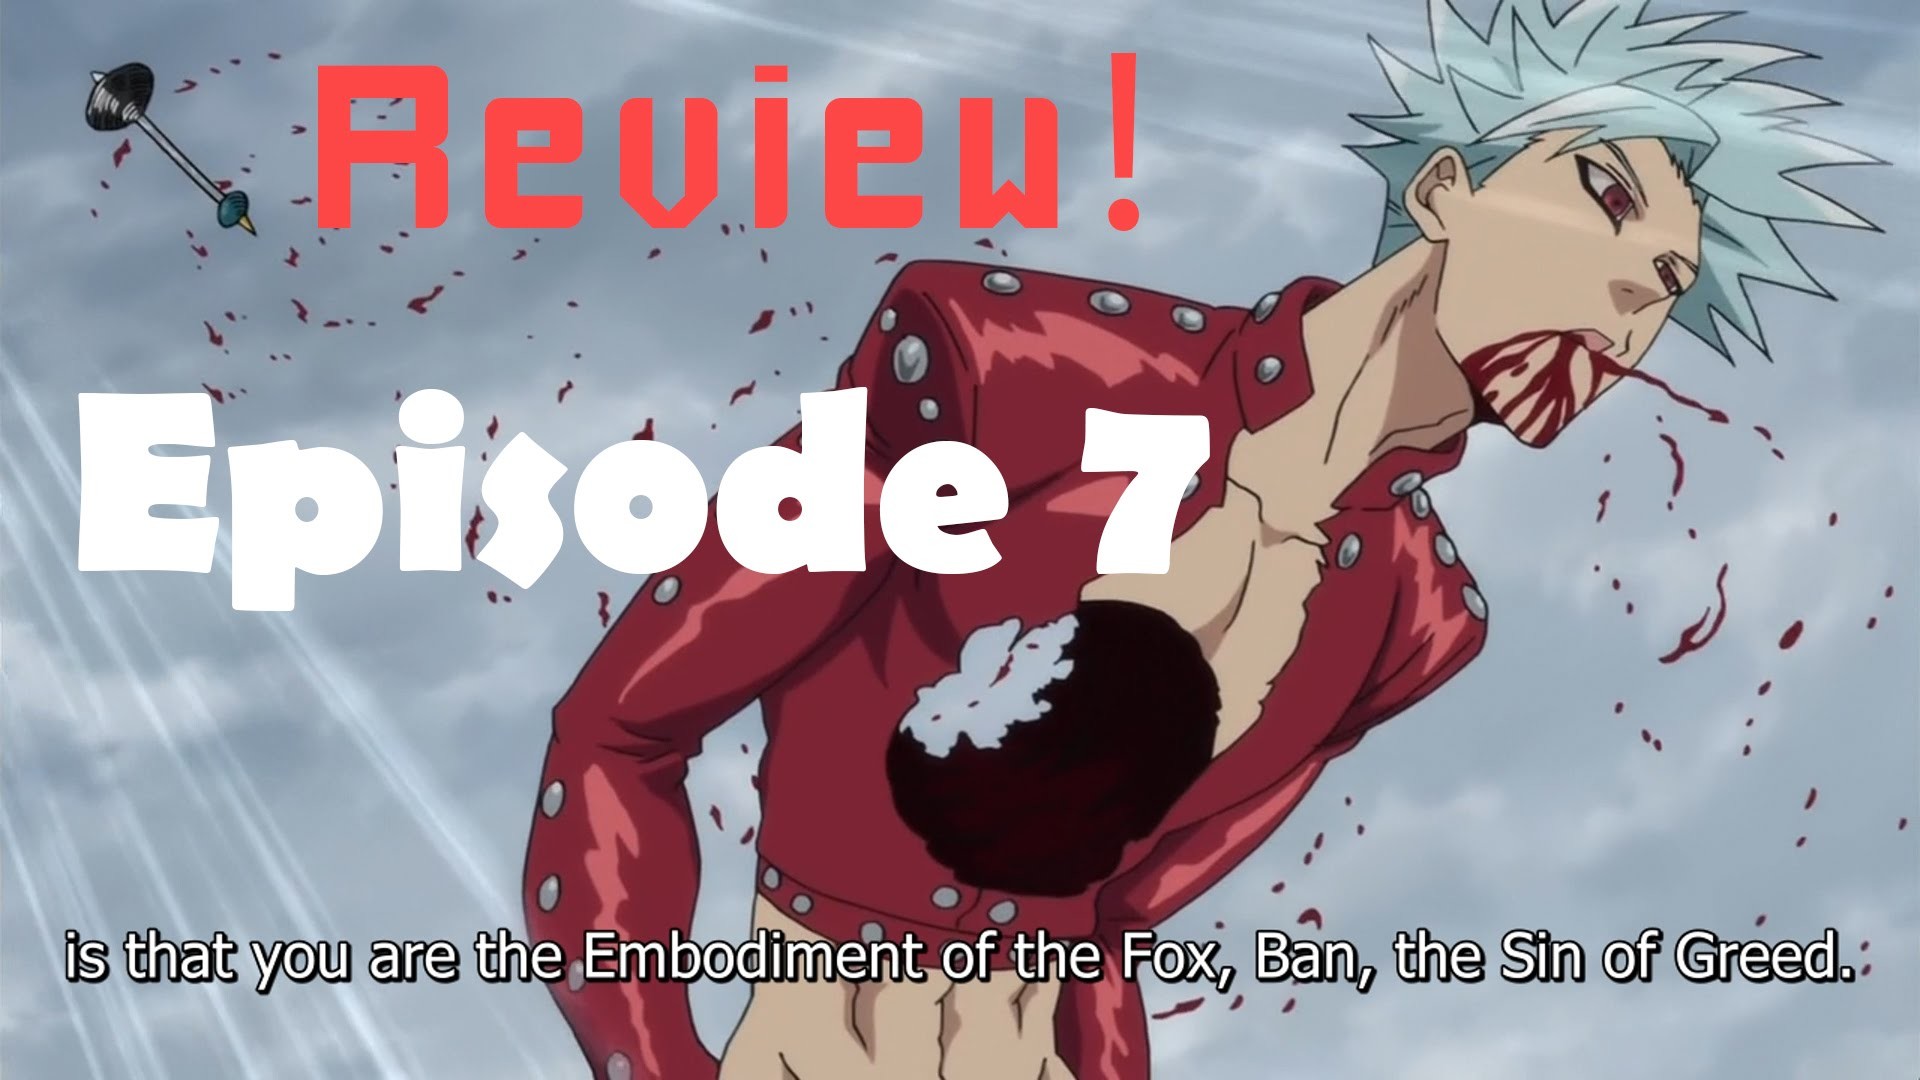 Nanatsu no Taizai Episode 7 (The Seven Deadly Sins) ä¸ã¤ã®å¤§ç½ª Anime Review – Ban  vs King! – YouTube